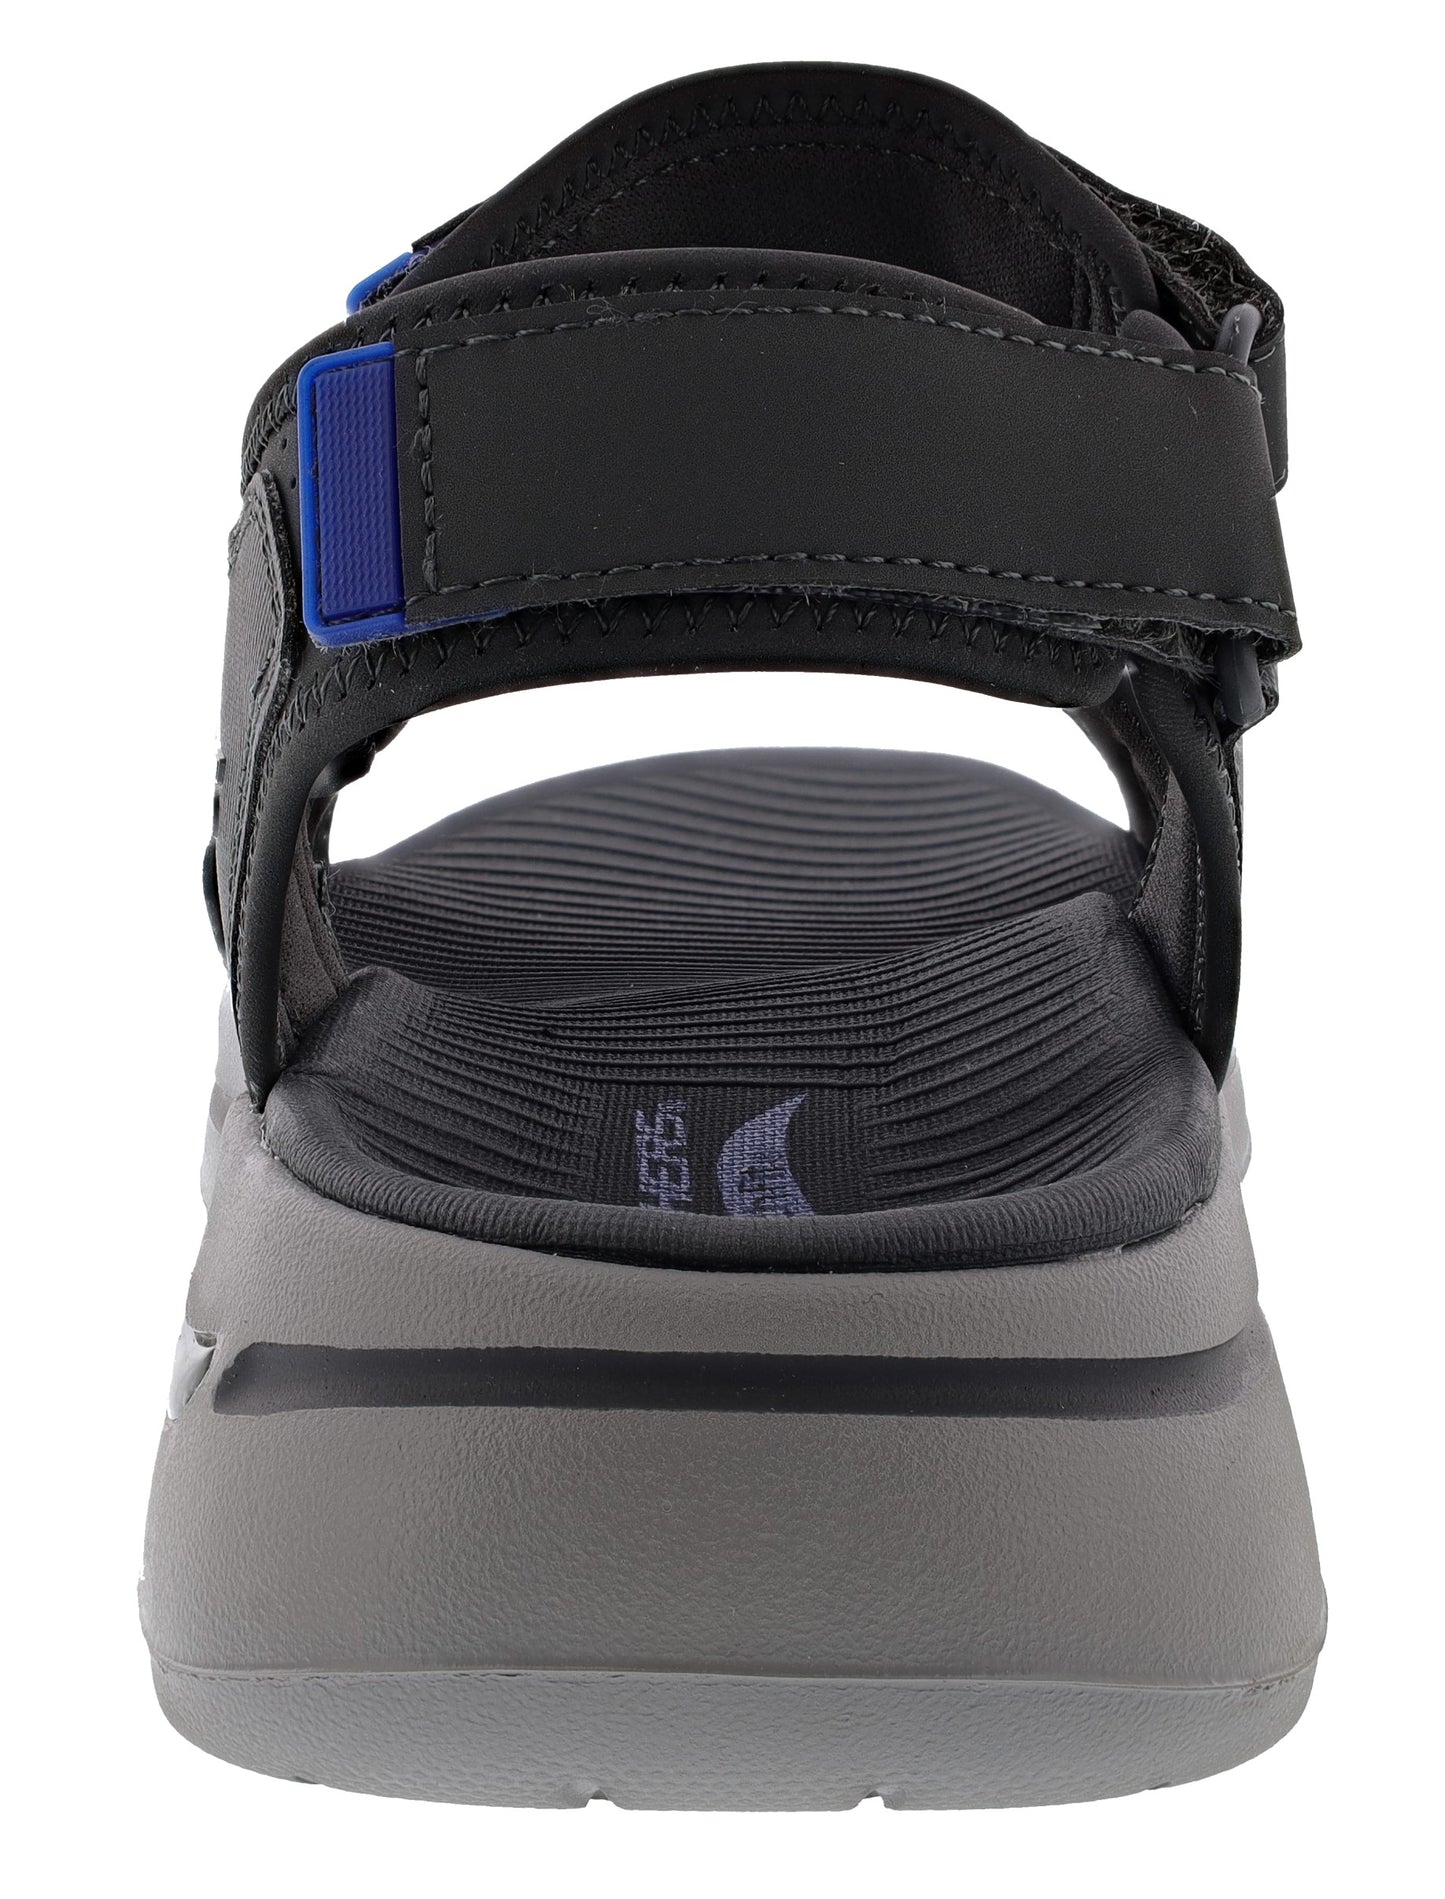 
                  
                    Skechers Men's Go Walk Arch Fit Sandal Mission Hook & Loop Strap Sandals
                  
                